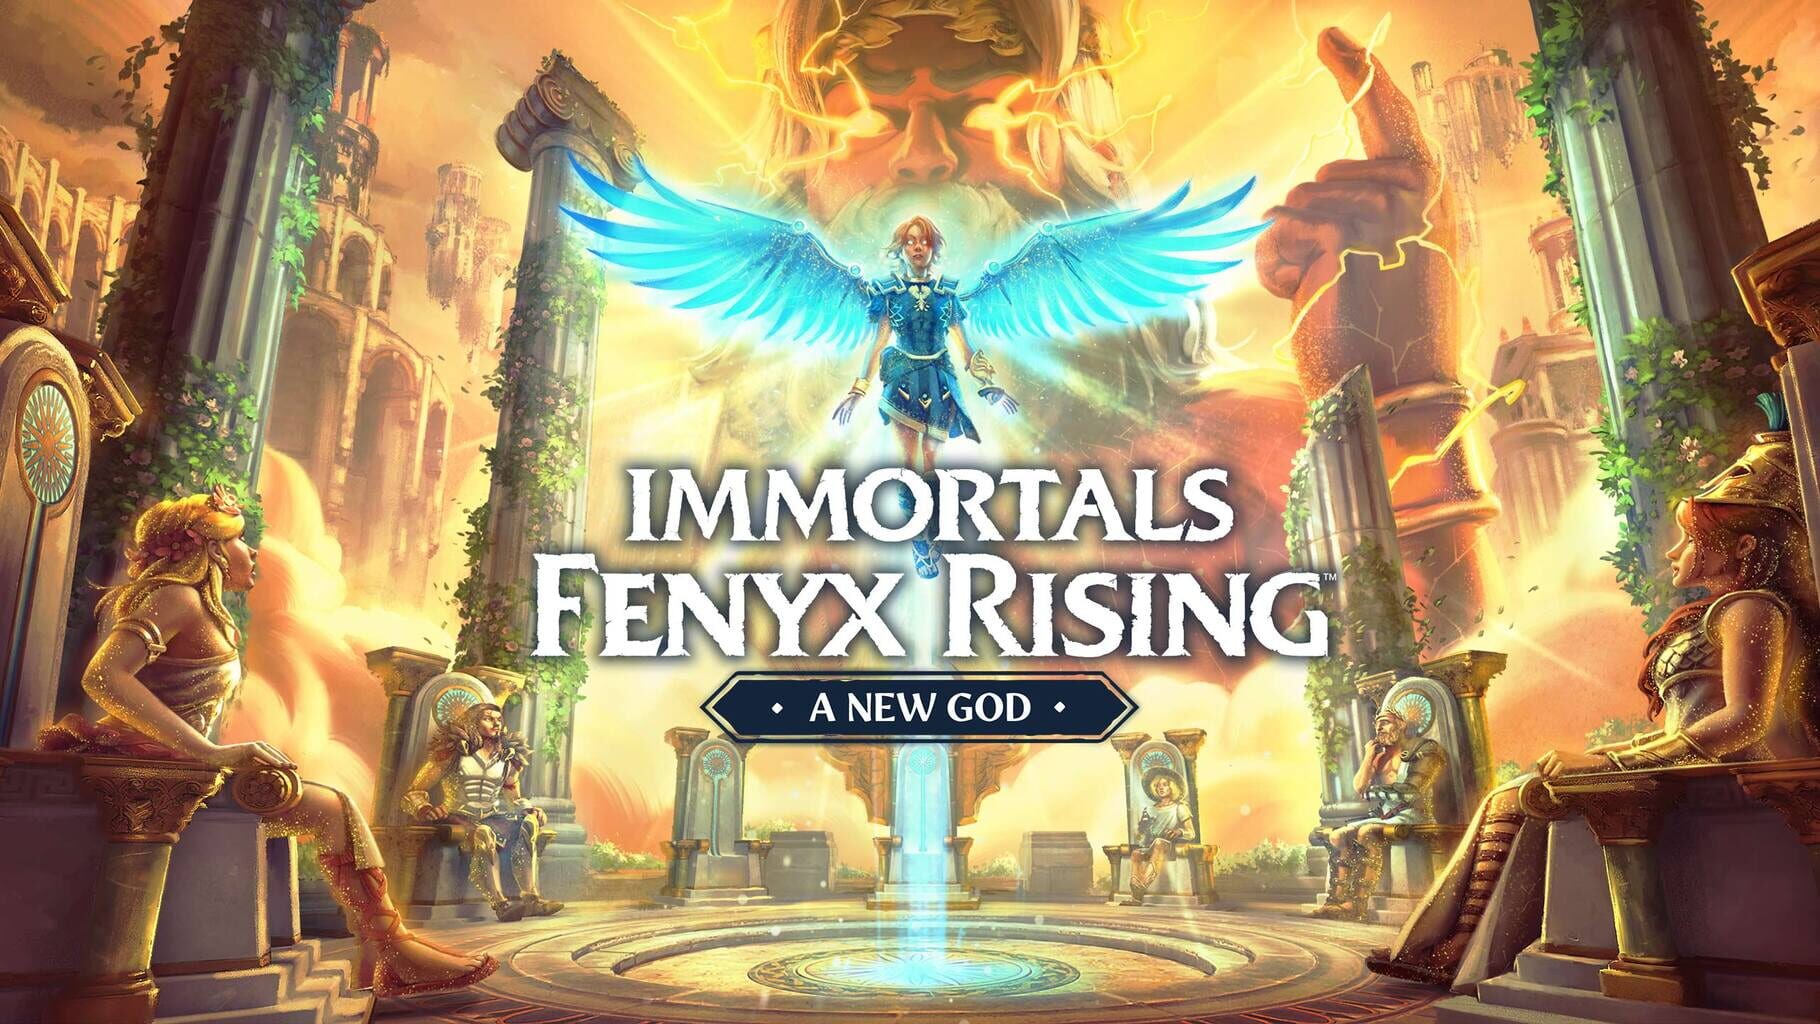 Arte - Immortals Fenyx Rising: A New God